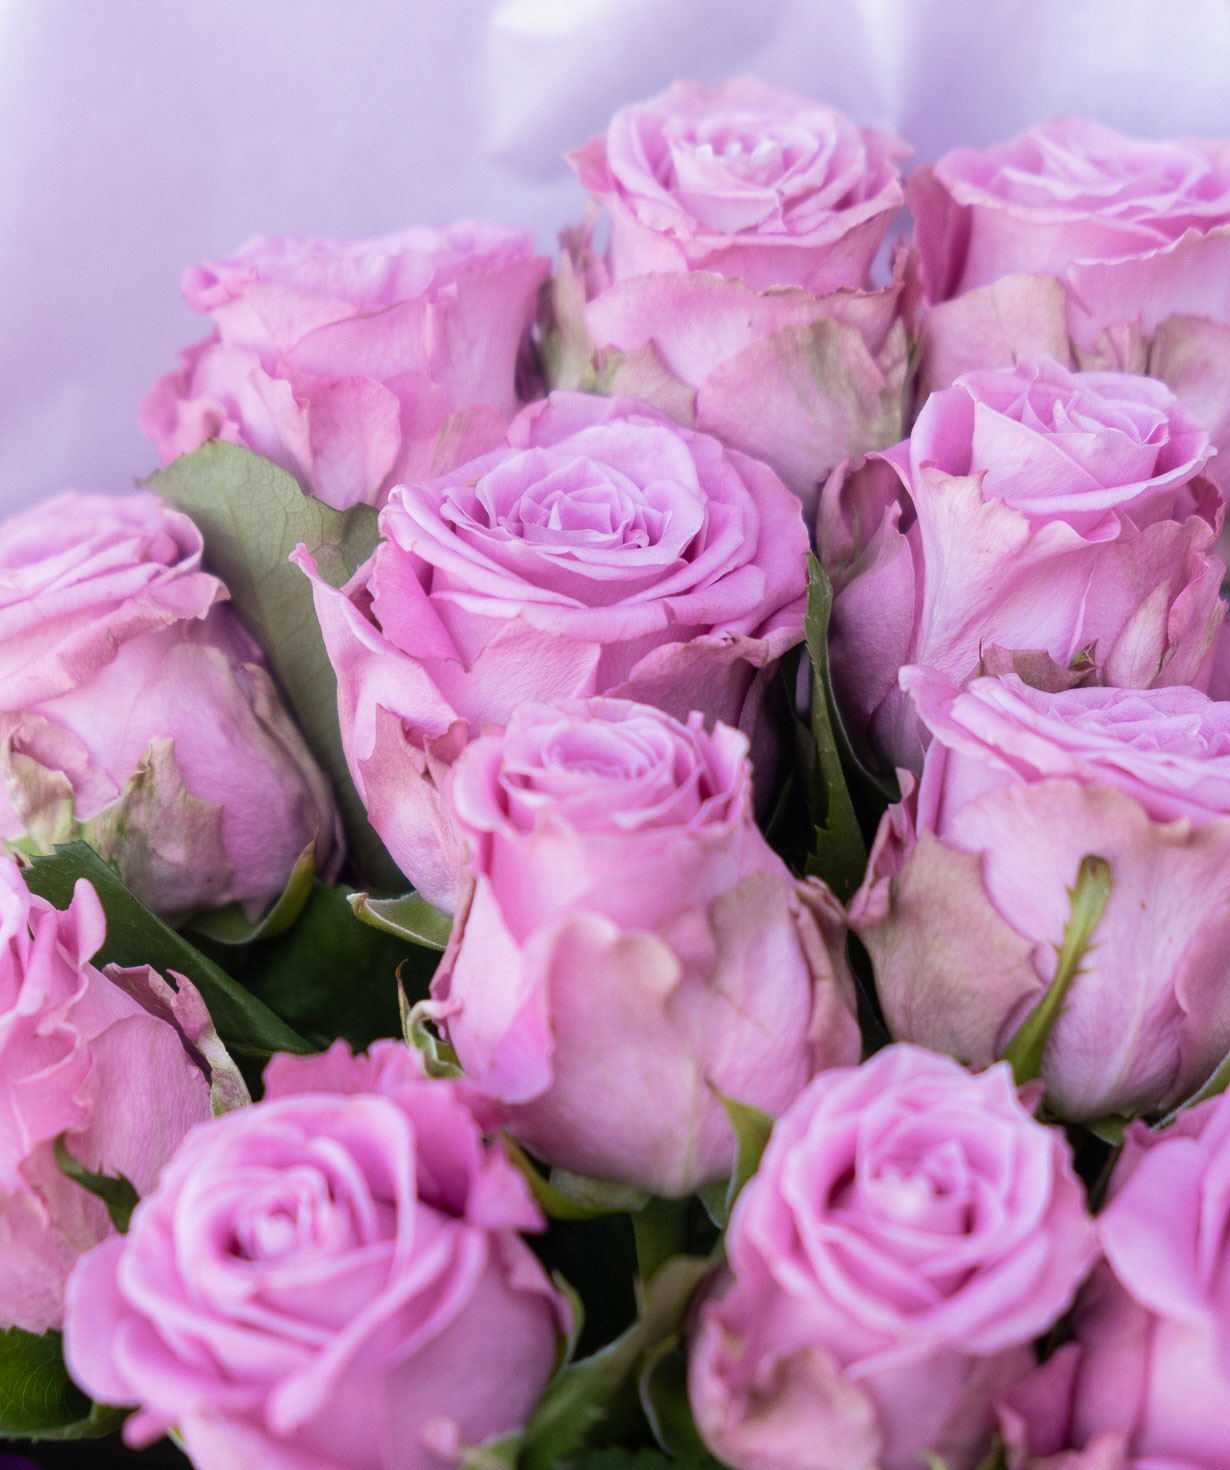 Ծաղկեփունջ «Ակվալանիա» վարդերով վարդագույն